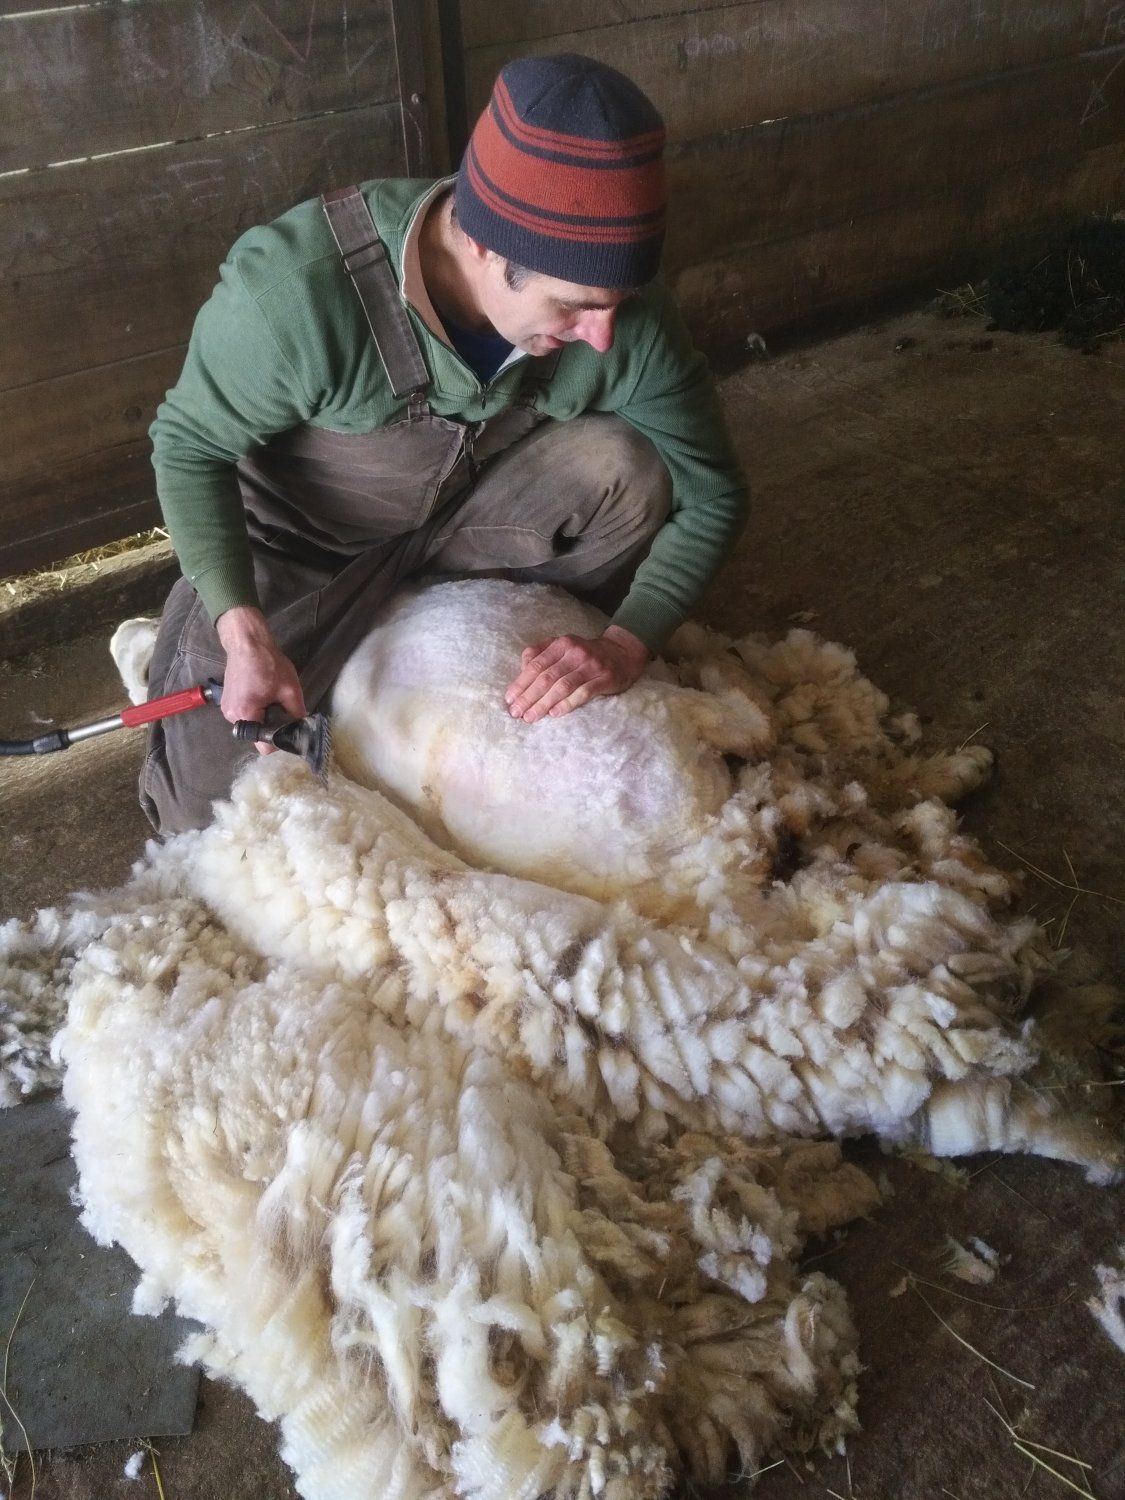 Previous Happening: Sheep shearing